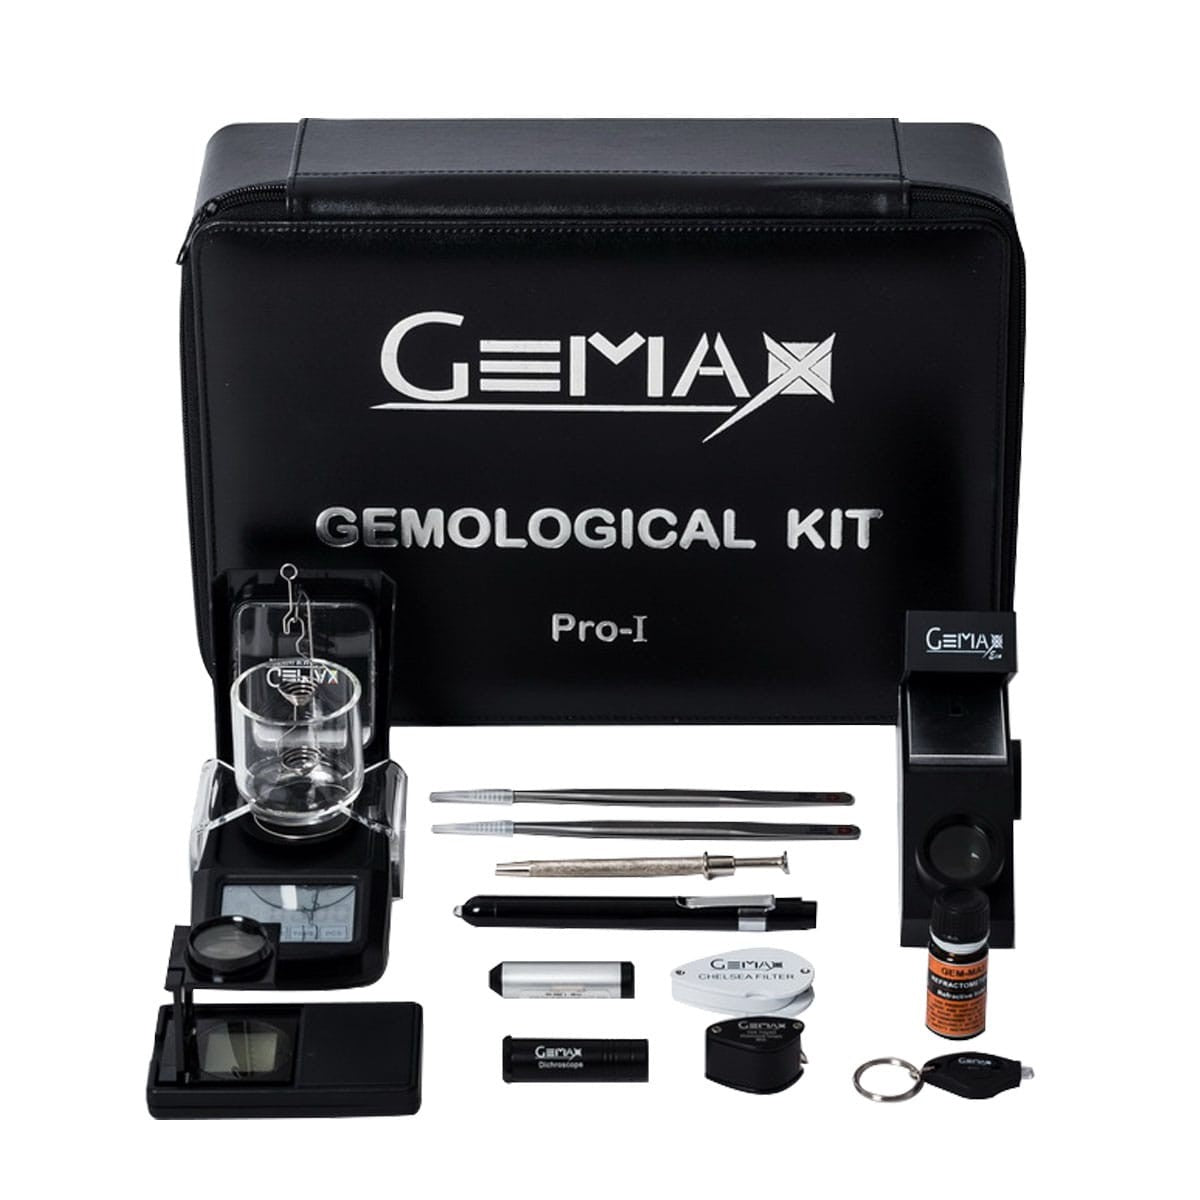 Gemological Kit PRO-I